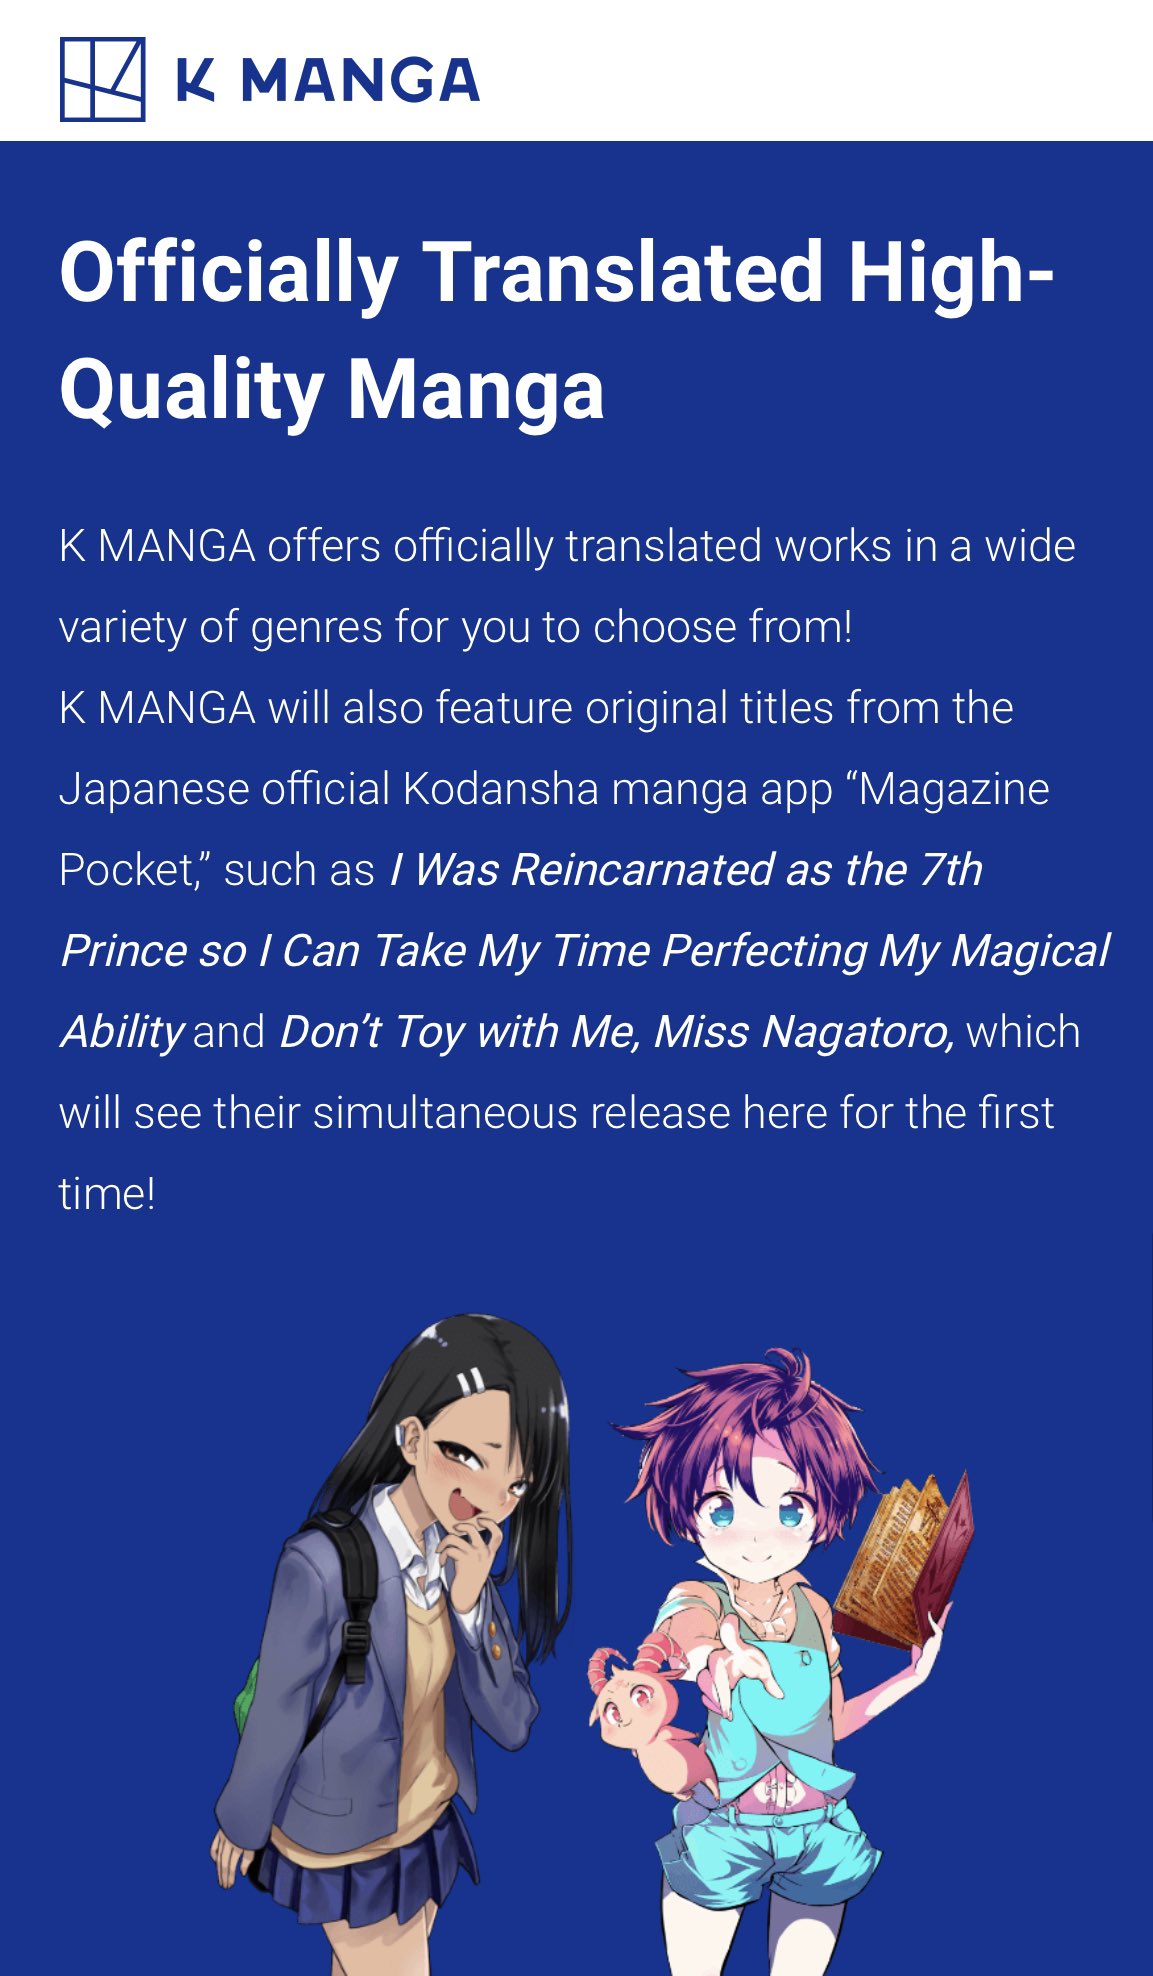 K Manga Official Translated Manga info